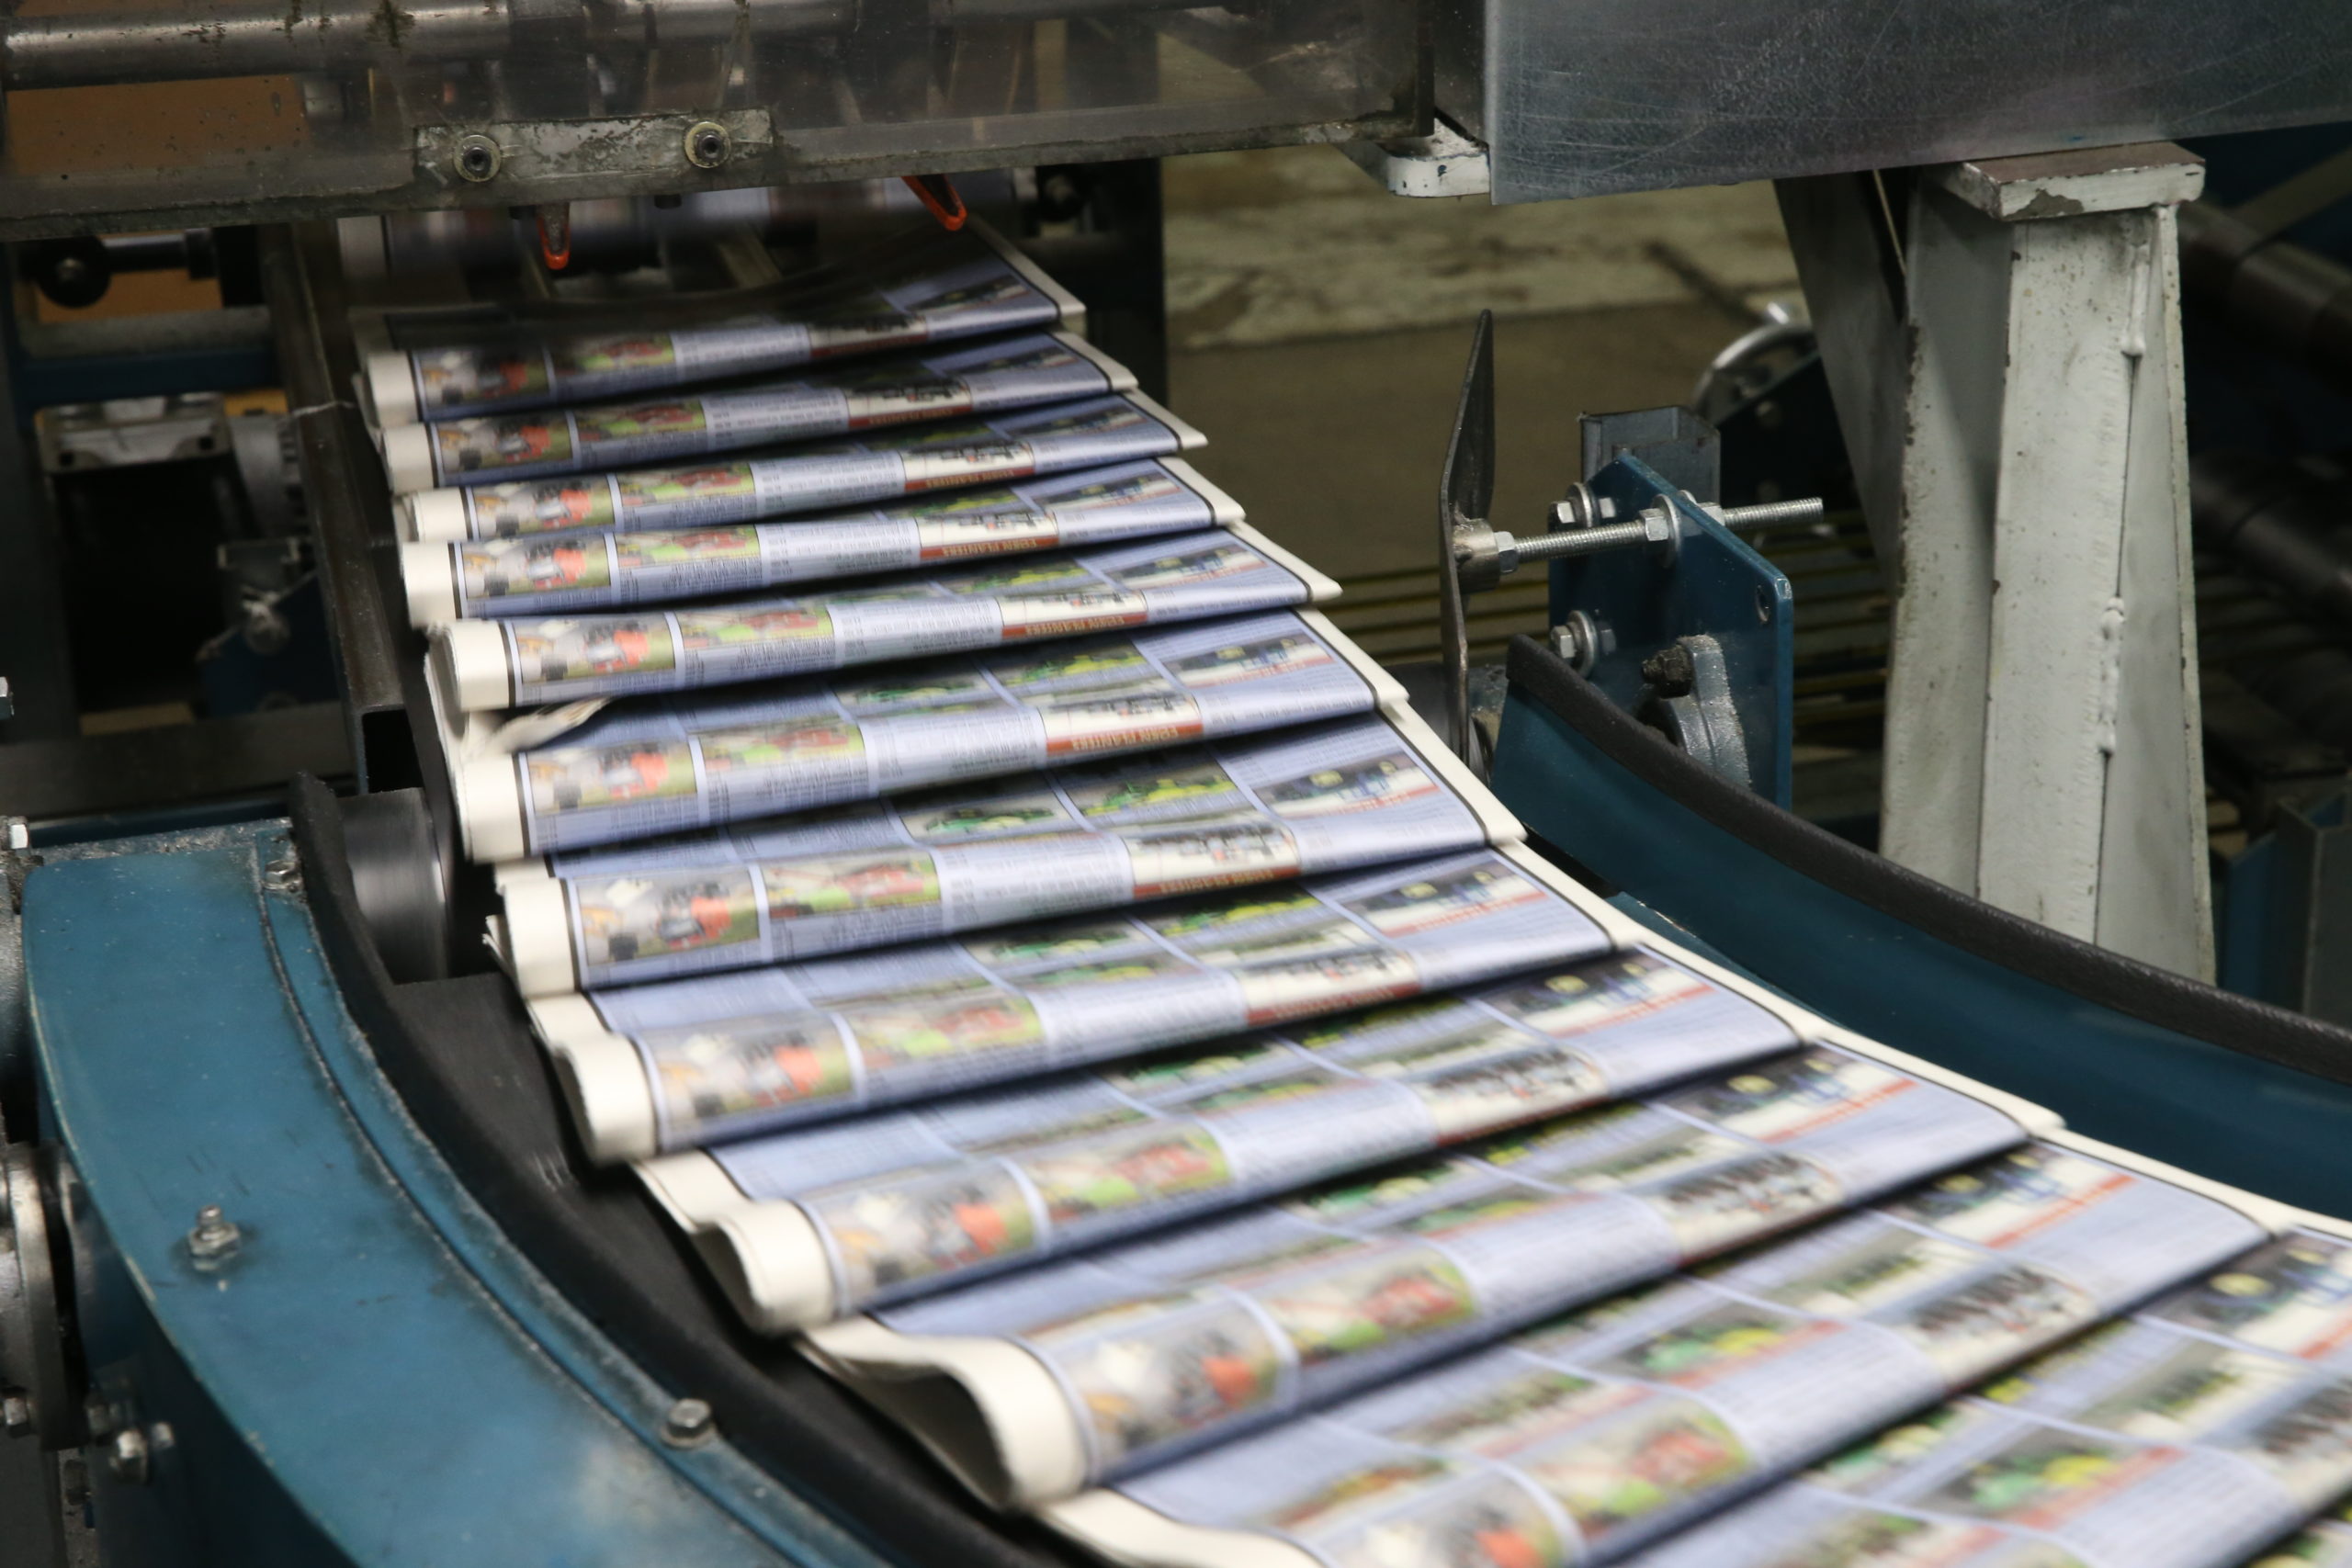 Newspapers being printed